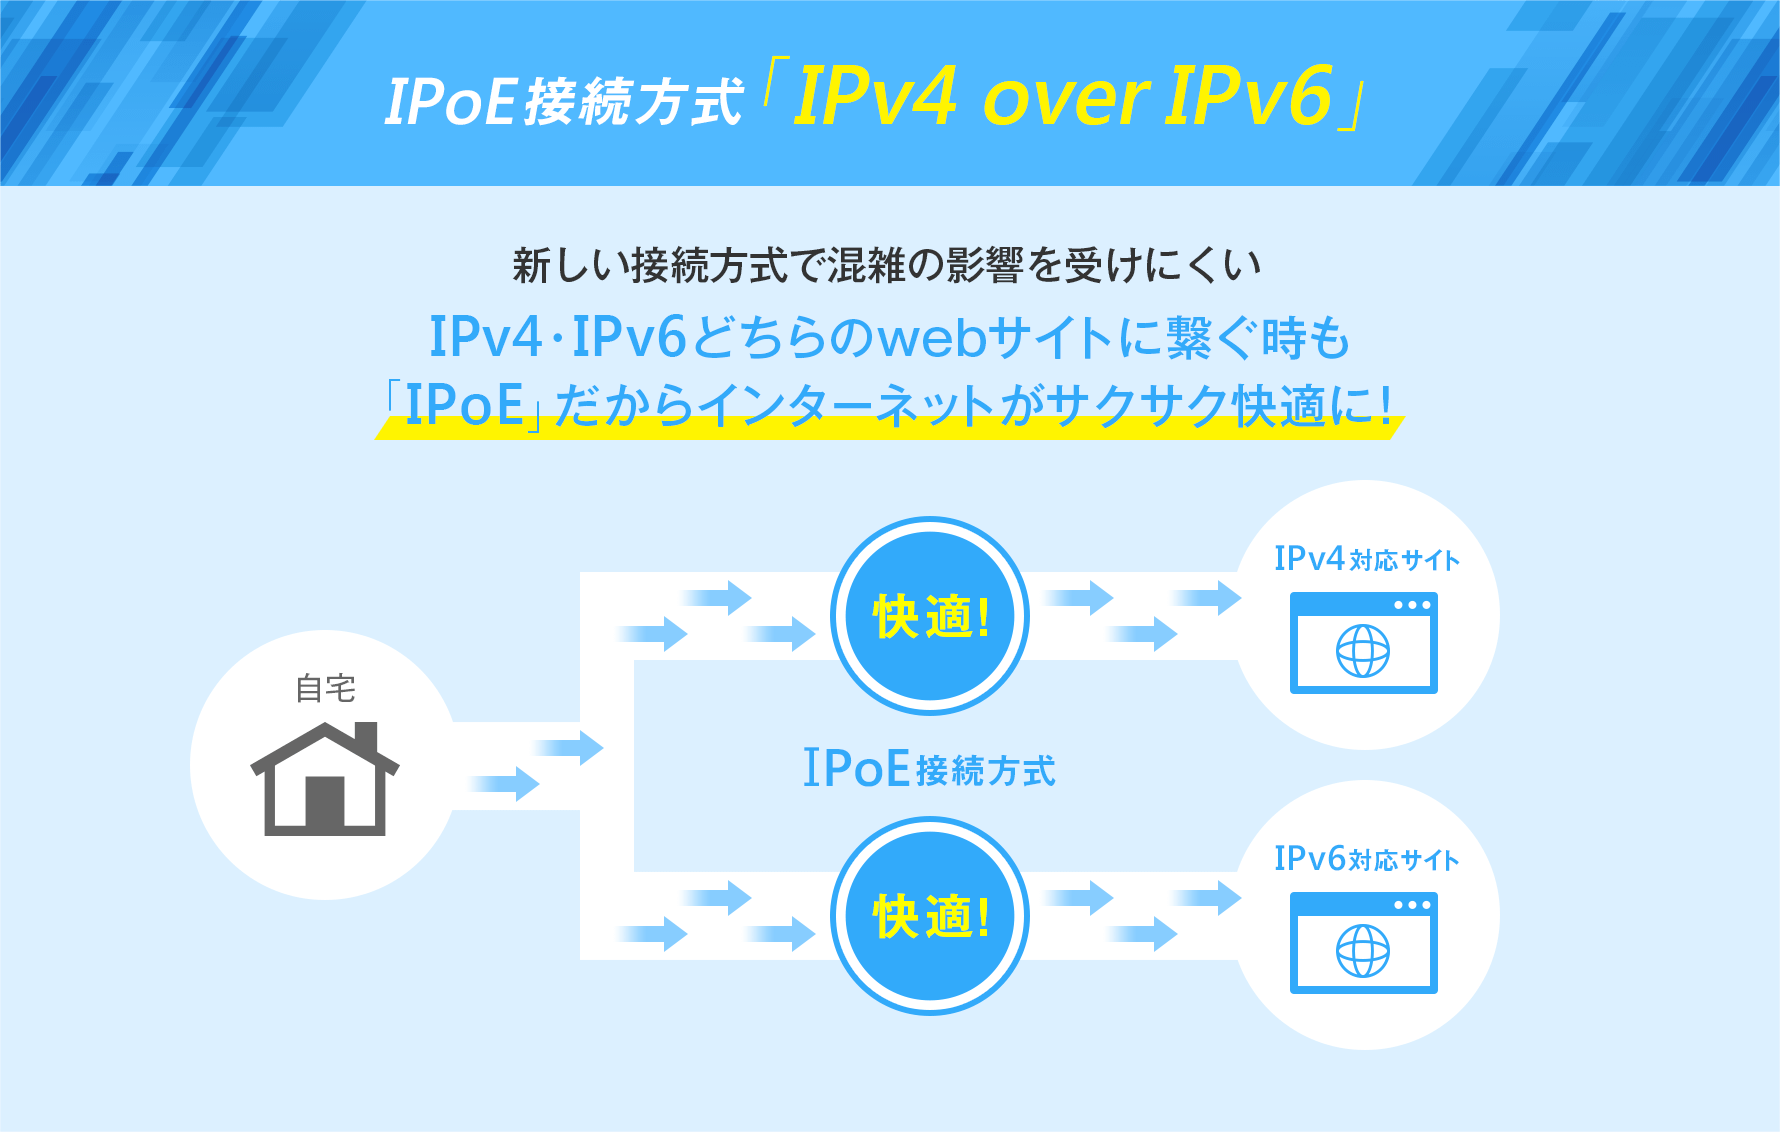 IPoE接続方式「IPv4 over IPv6」 新しい接続方式で混雑の影響を受けにくい IPv4・IPv6どちらのwebサイトに繋ぐ時も「IPoE」だからインターネットがサクサク快適に！